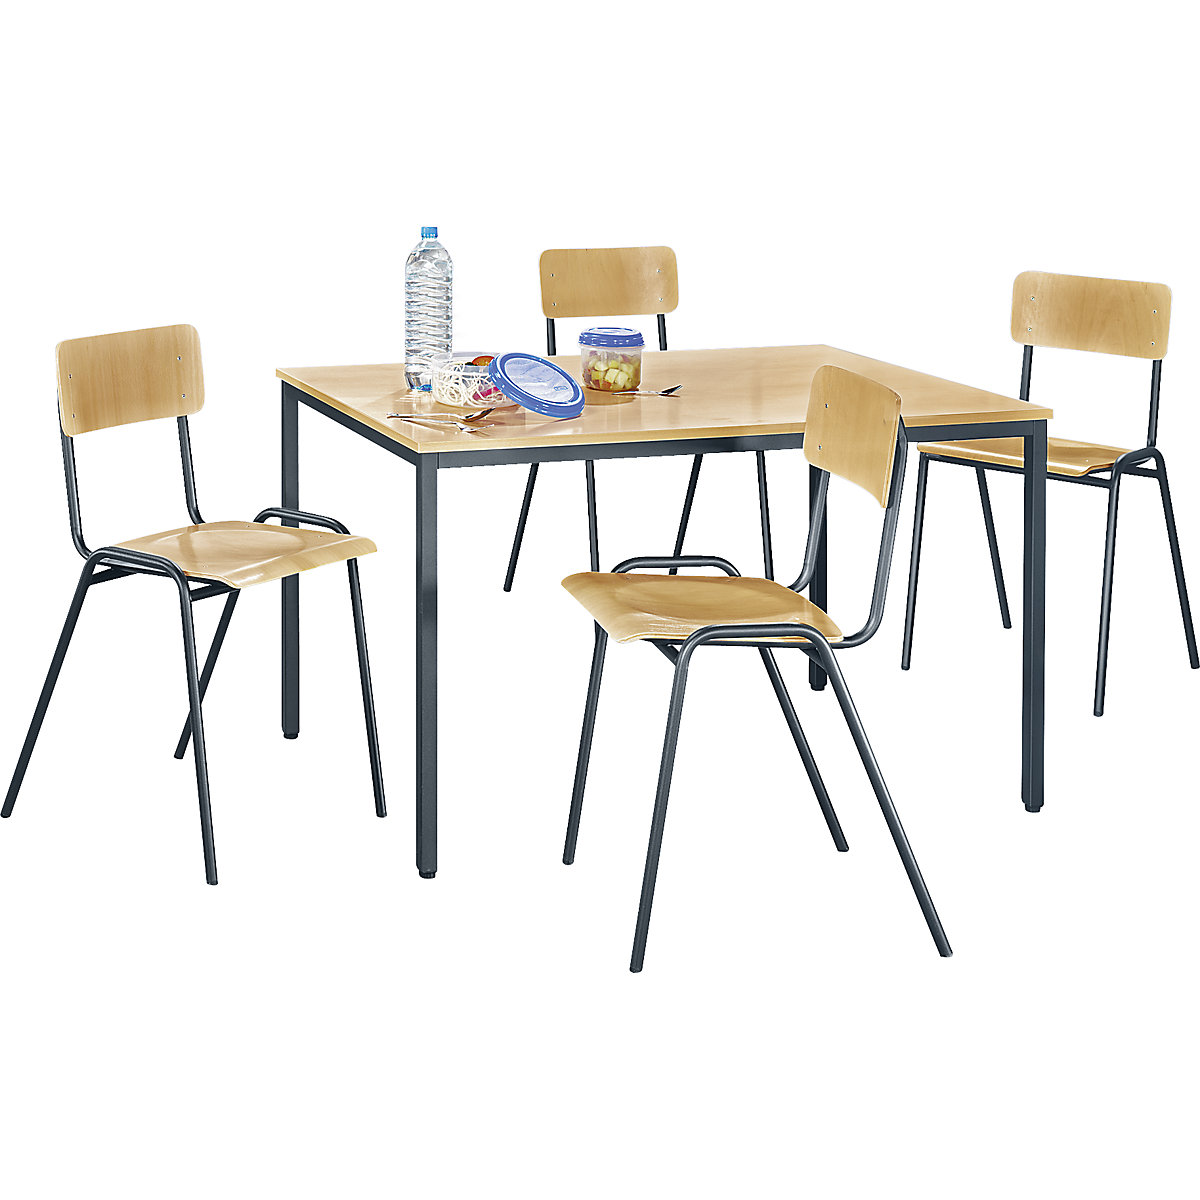 Višenamjenska garnitura za sjedenje – eurokraft basic, 1 stol, 4 stolice, ploča stola u imitaciji bukve, postolje u bazalt sivoj boji-6